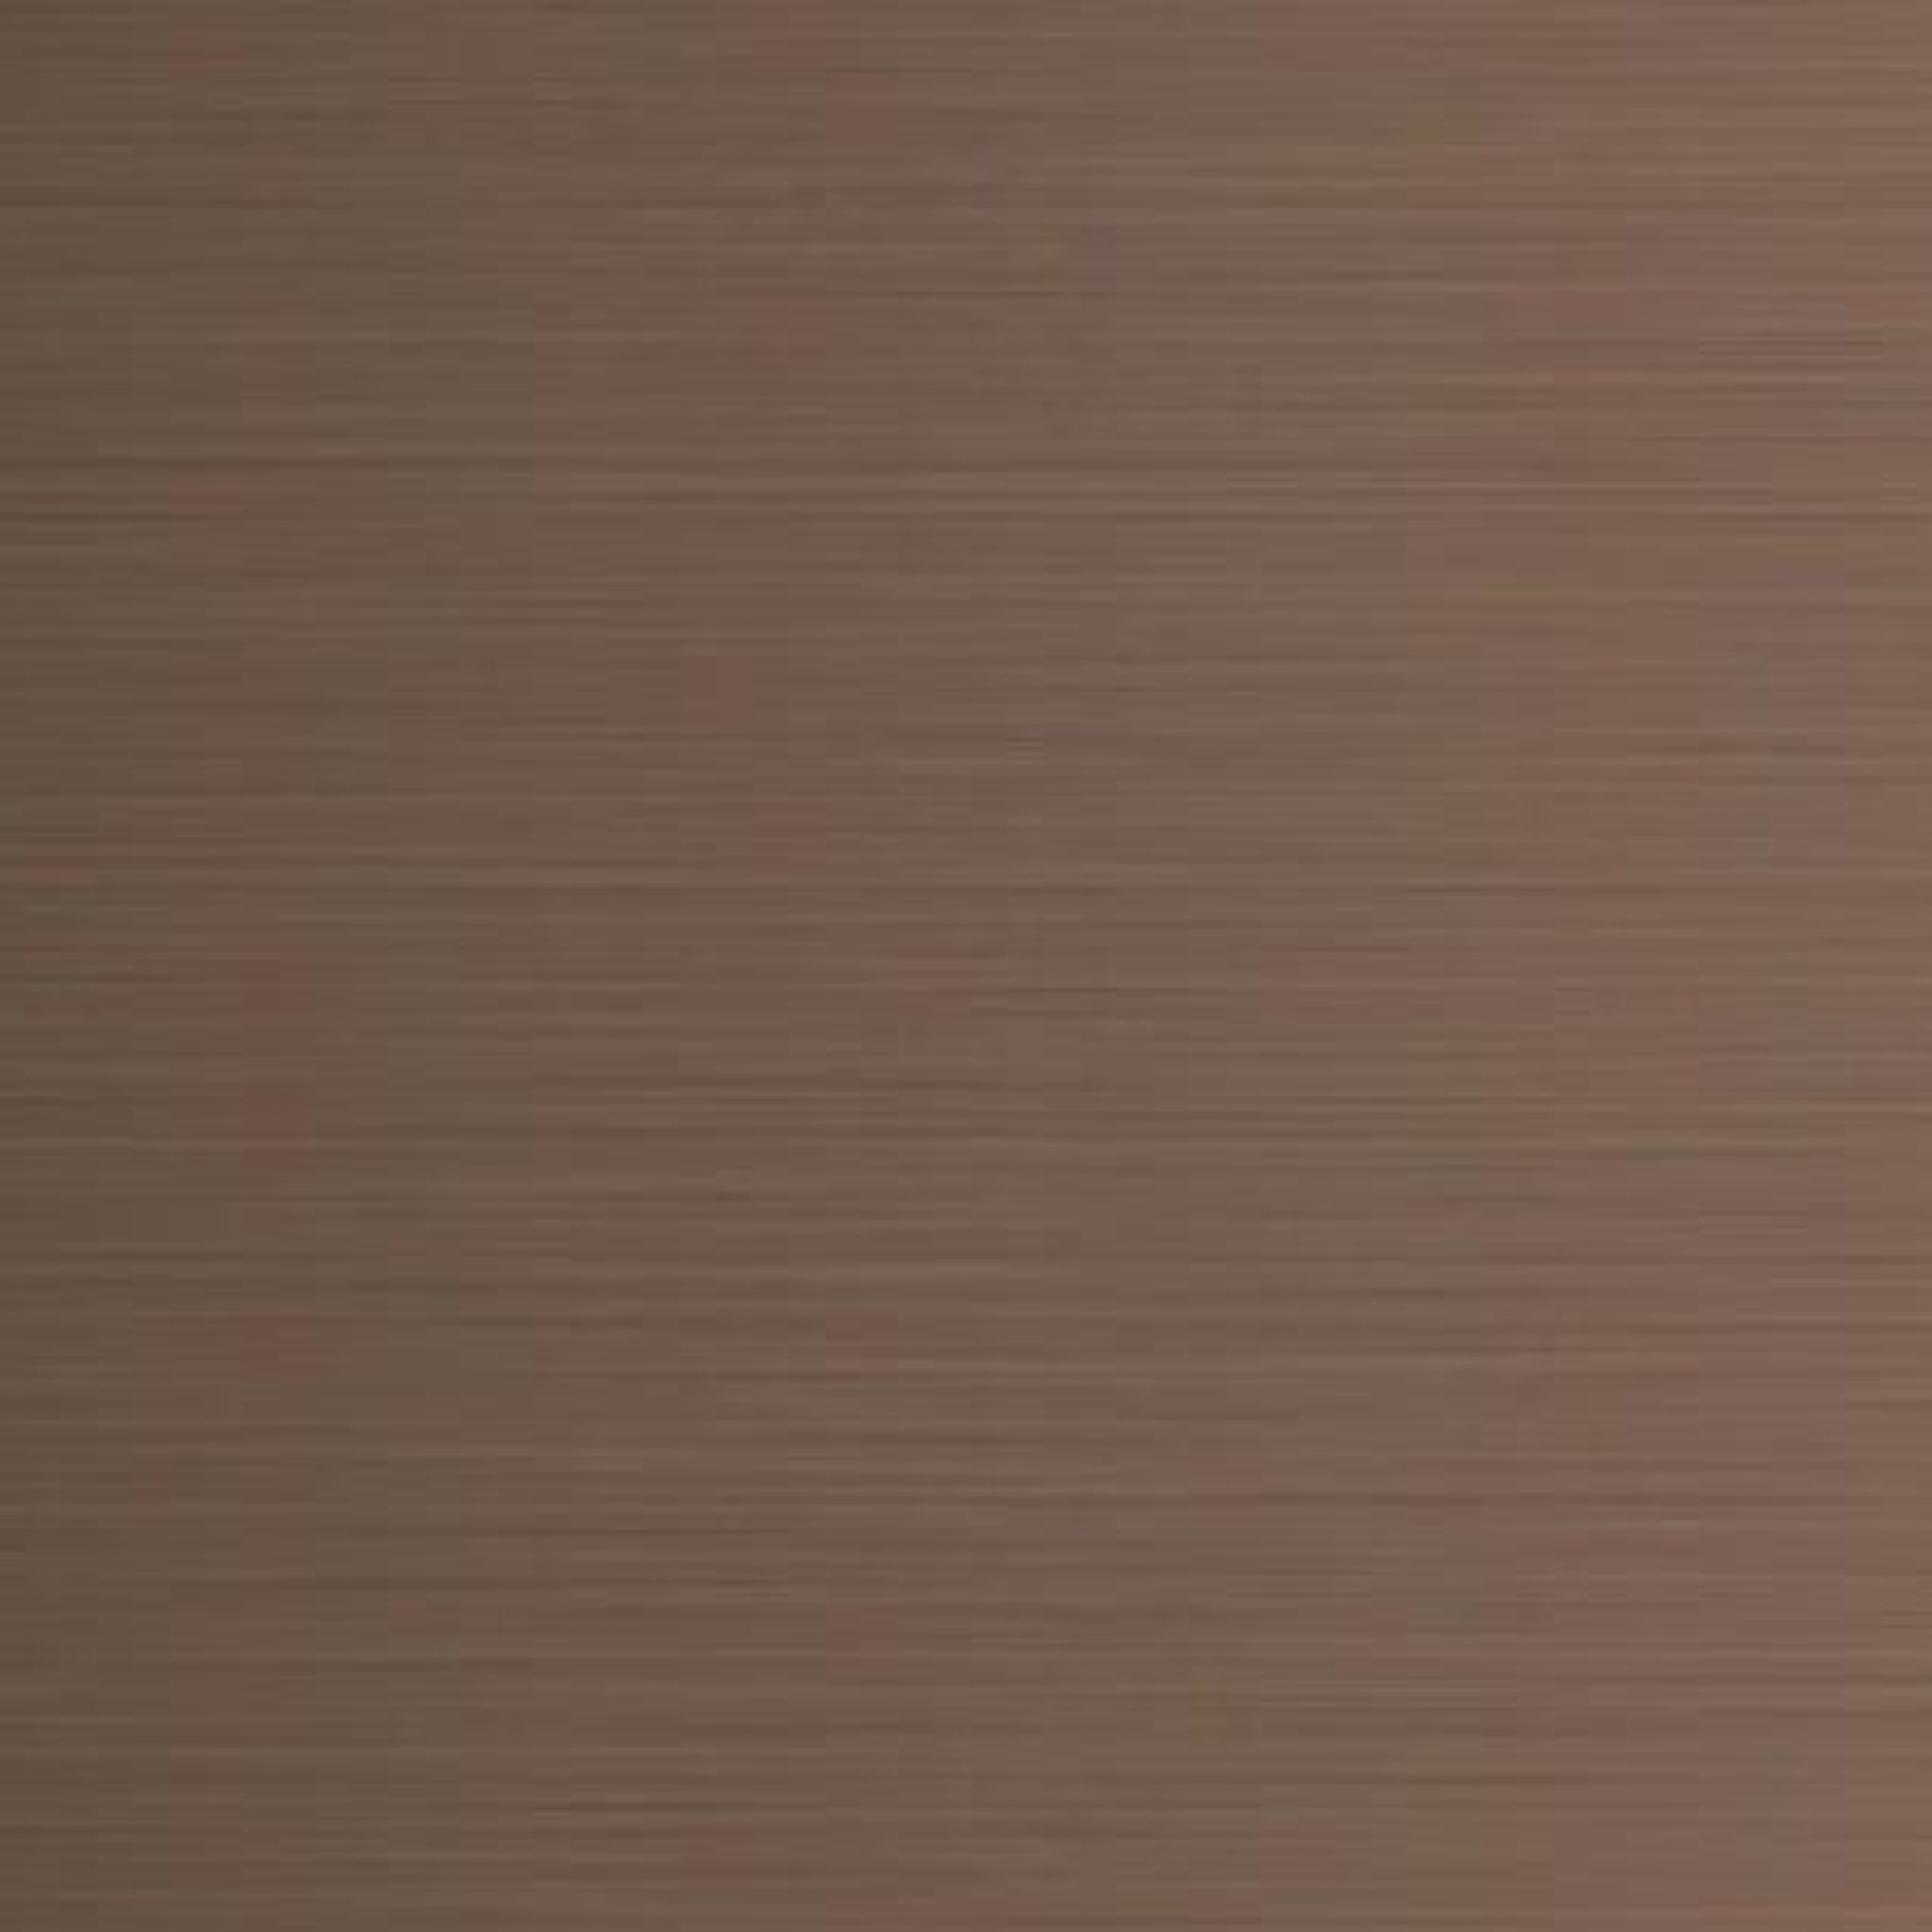 AULIC CANTERBURY LED MIRROR BRUSHED BRONZE 500MM SAMPLE